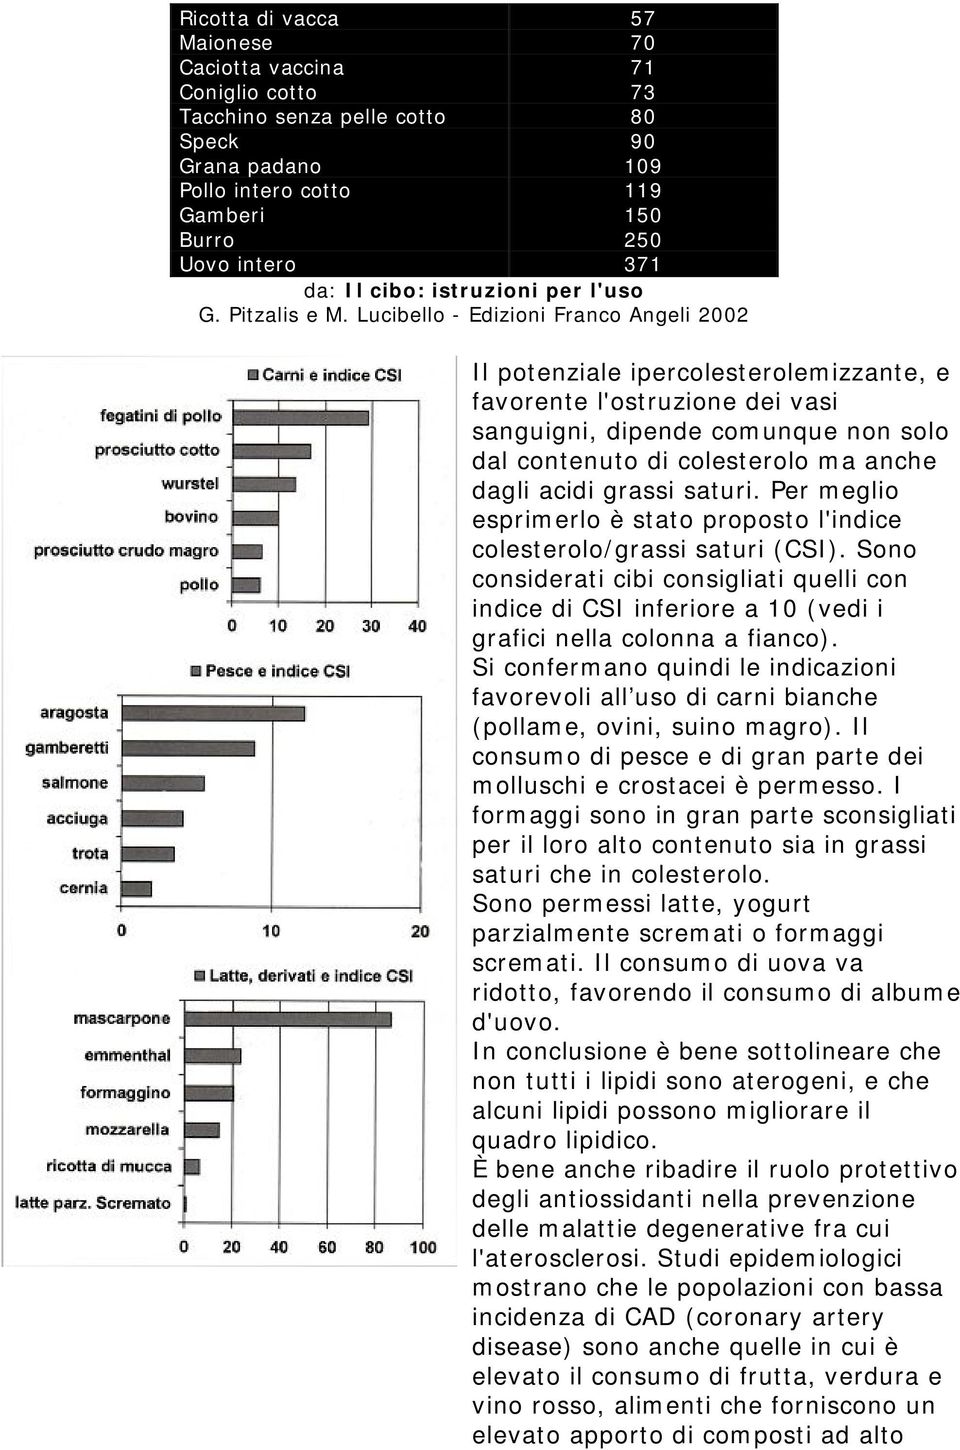 Lucibello - Edizioni Franco Angeli 2002 Il potenziale ipercolesterolemizzante, e favorente l'ostruzione dei vasi sanguigni, dipende comunque non solo dal contenuto di colesterolo ma anche dagli acidi